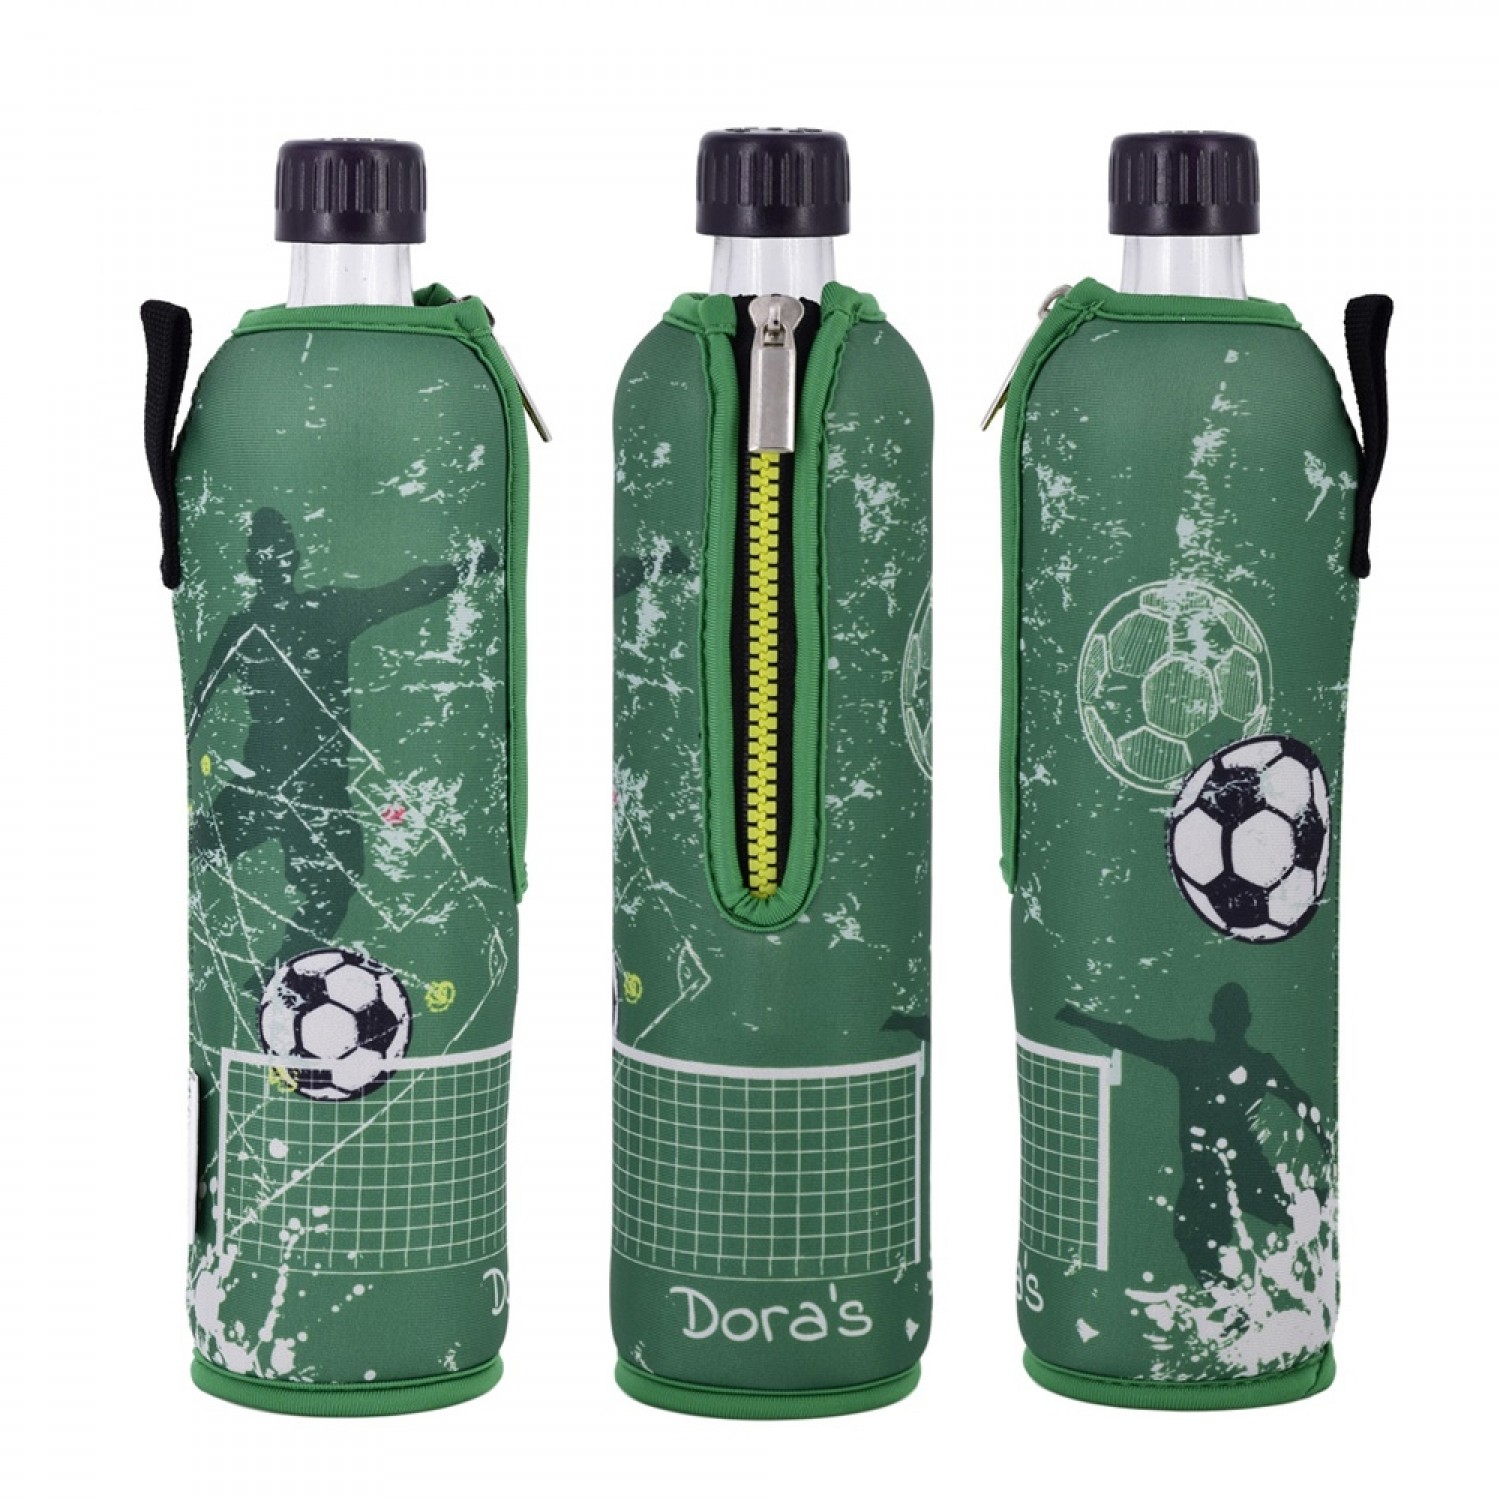 Dora‘s reusable glass bottle in Football Neoprene Sleeve